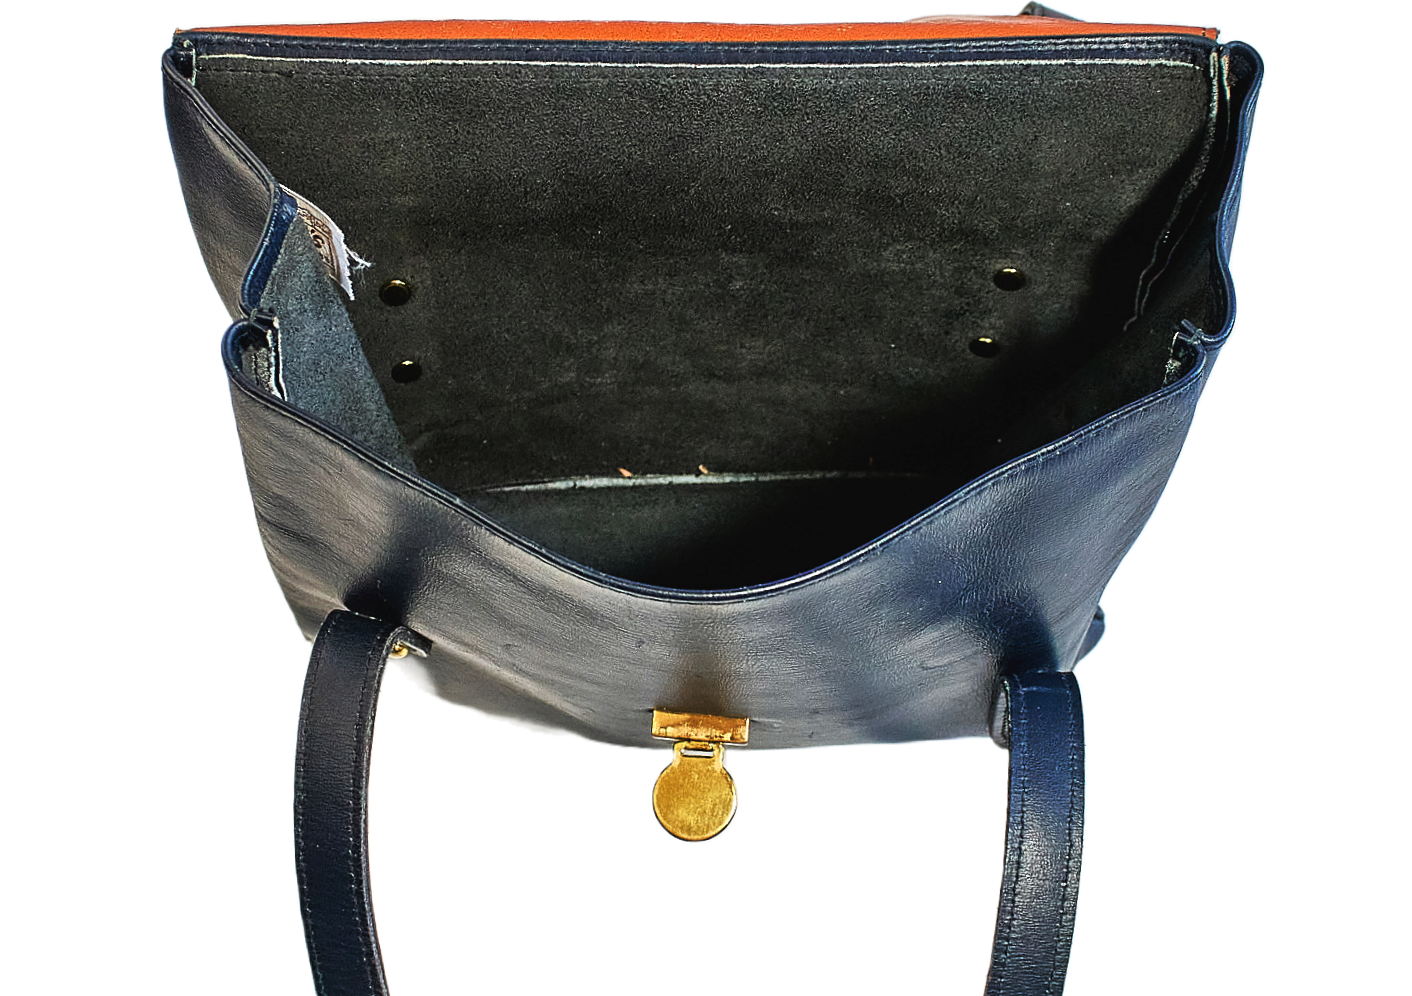 Vintage 1960s Leather Messenger Handbag